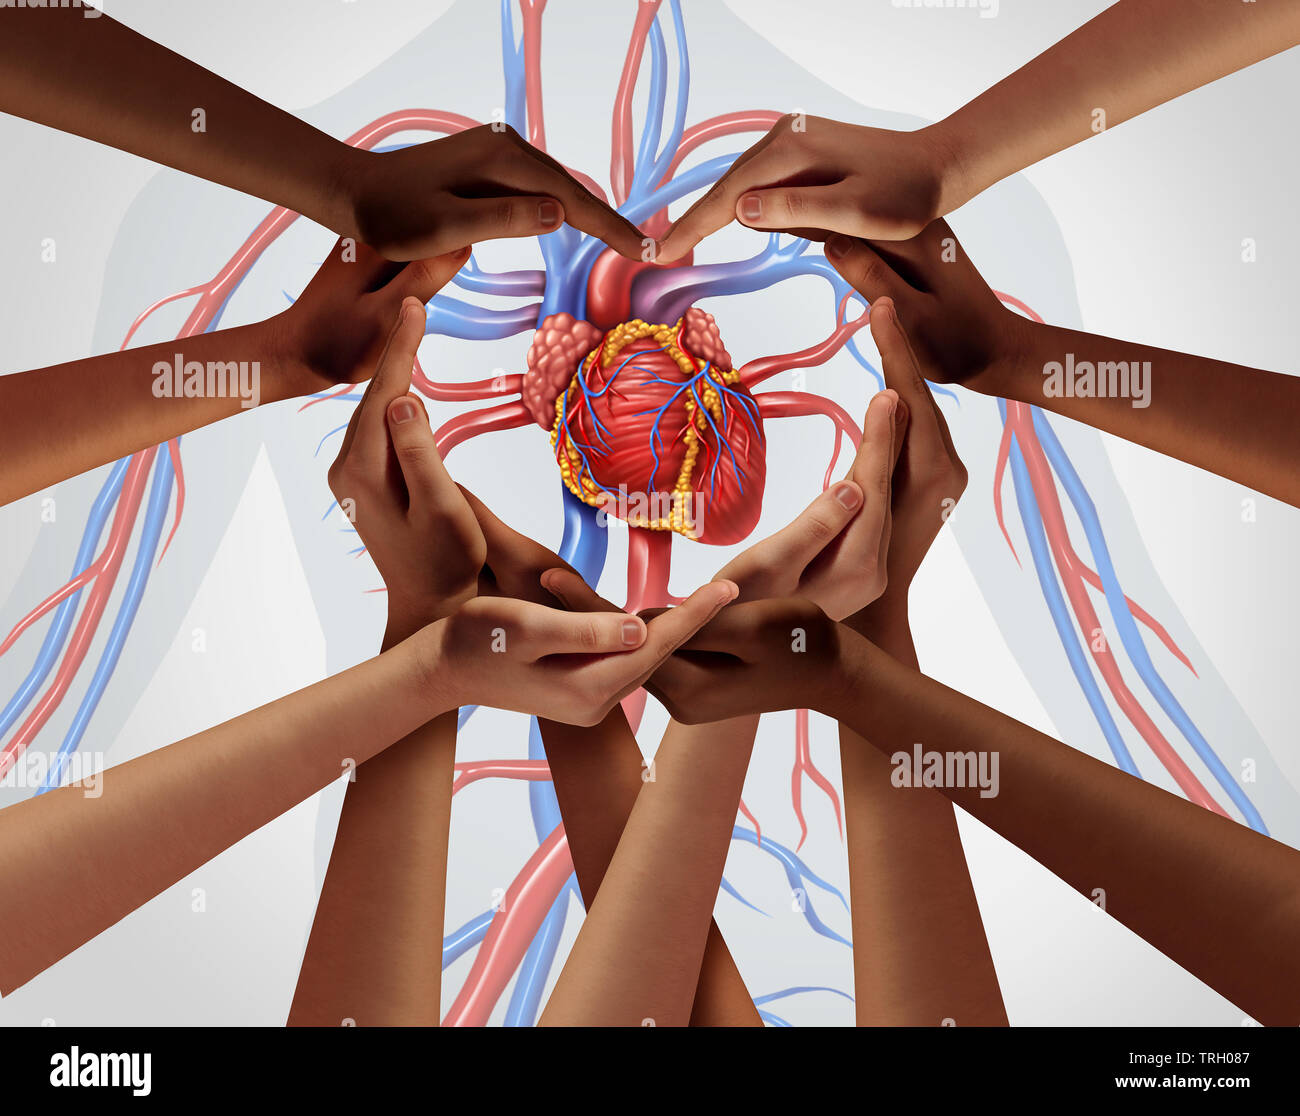 Coeur de l'homme et le soutien du groupe de recherche cardiaque que les mains en forme de symbole d'amour pour les soins de santé et d'assurance médicale symbole dans une 3D illustration styl Banque D'Images